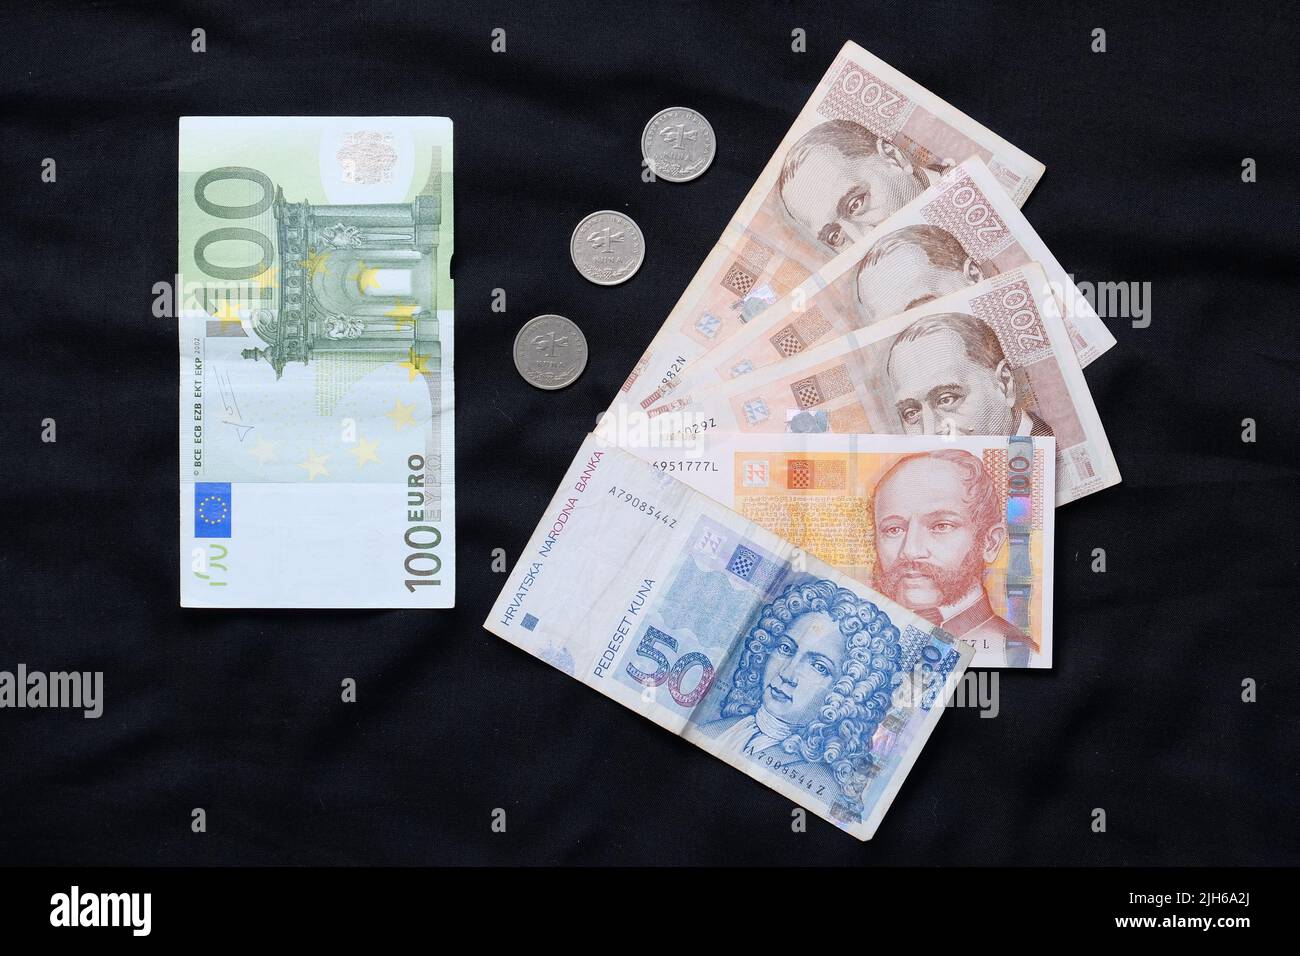 Euro conversion Banque de photographies et d'images à haute résolution -  Alamy